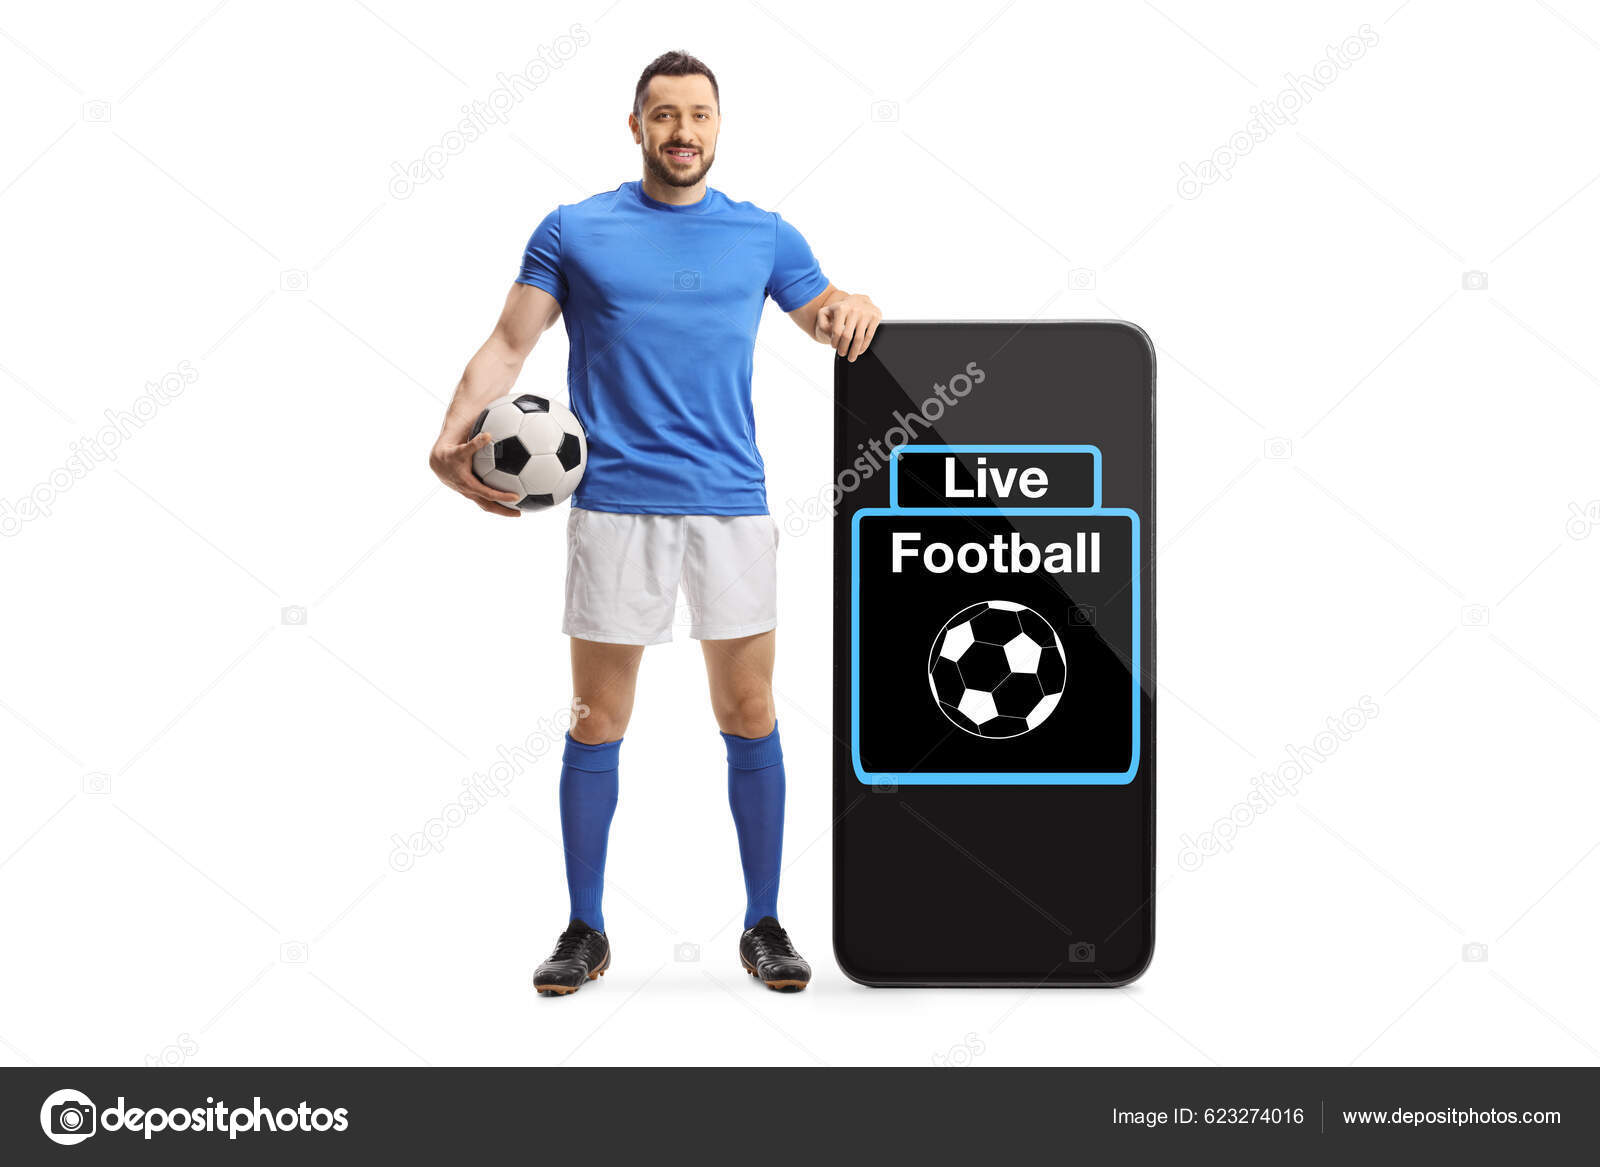 Jogos de futebol 2022 na tela do smartphone futebol ao vivo online